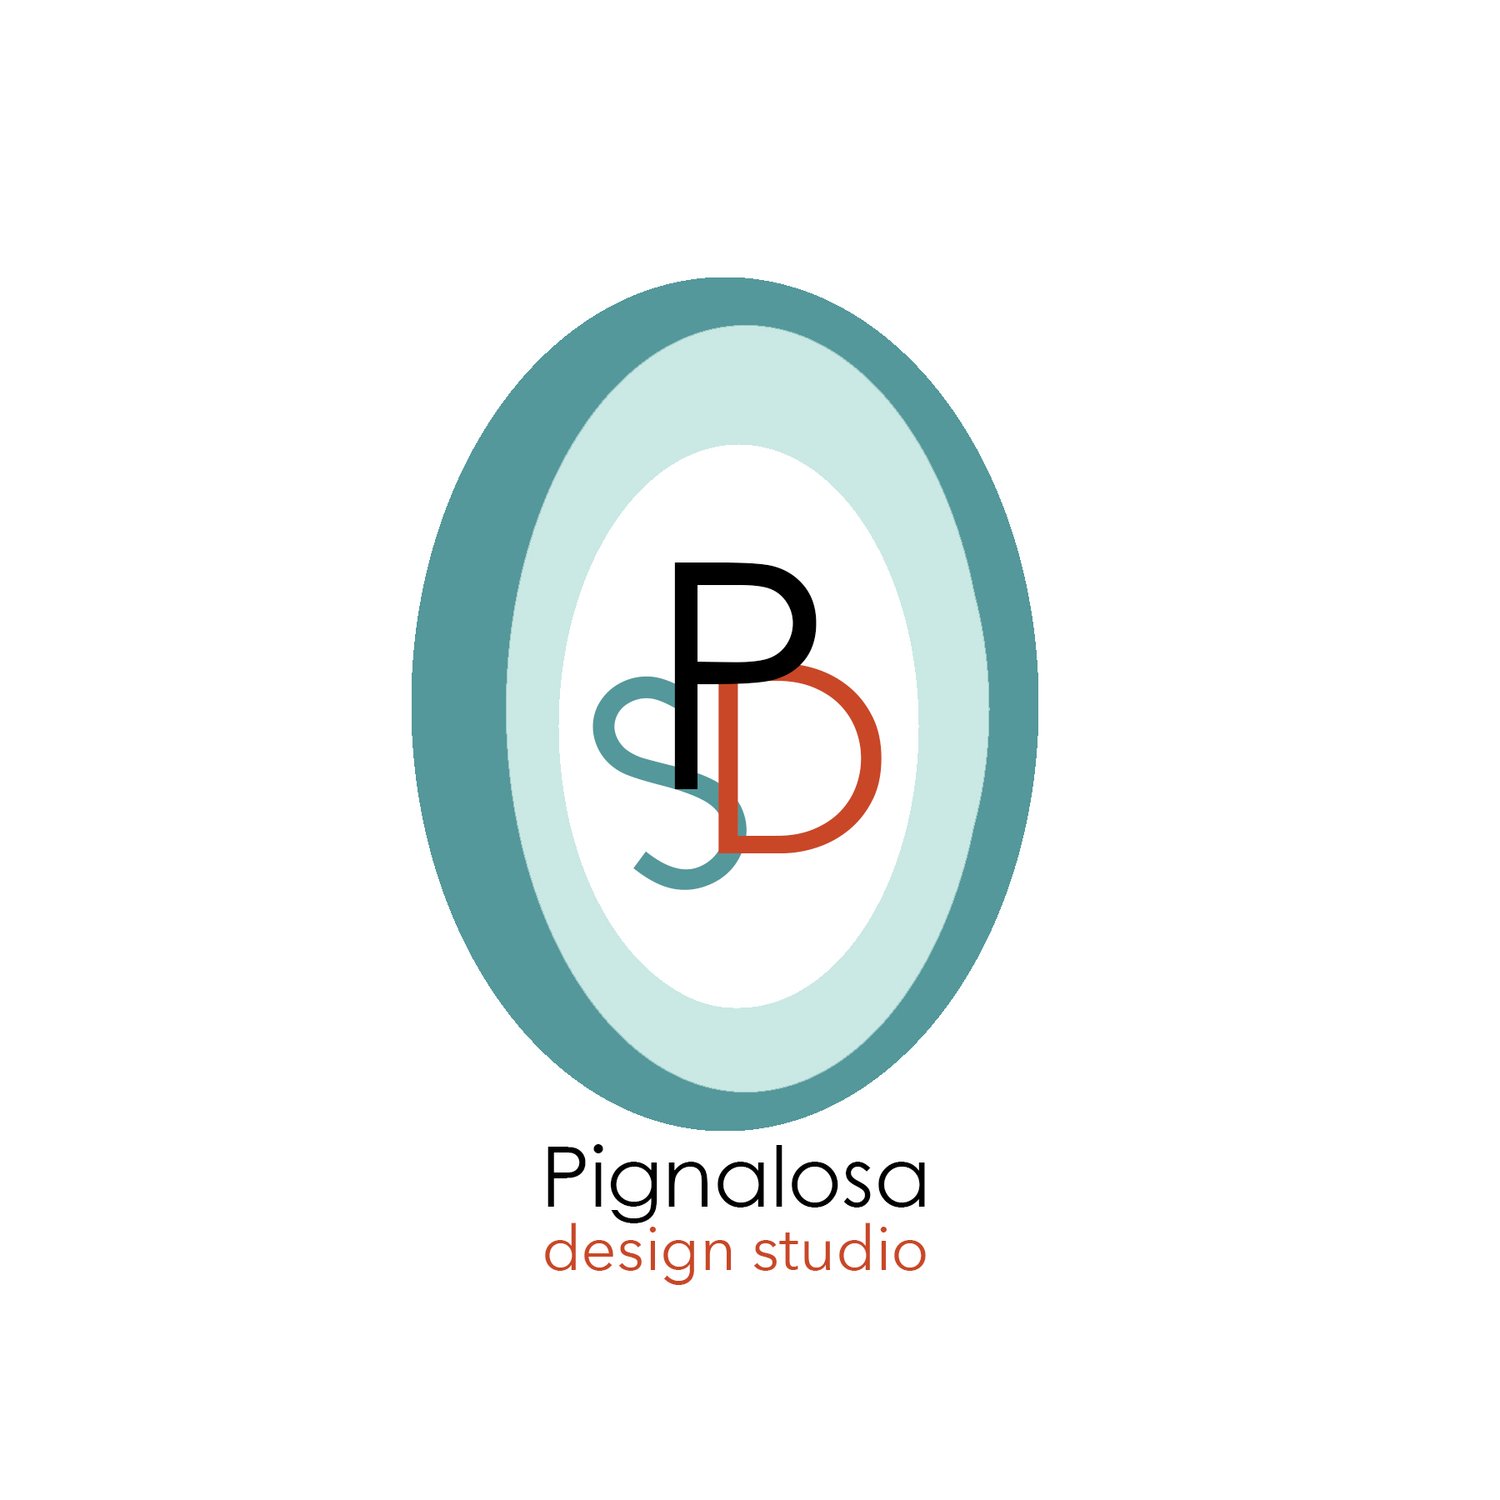 PIGNALOSA DESIGN STUDIO